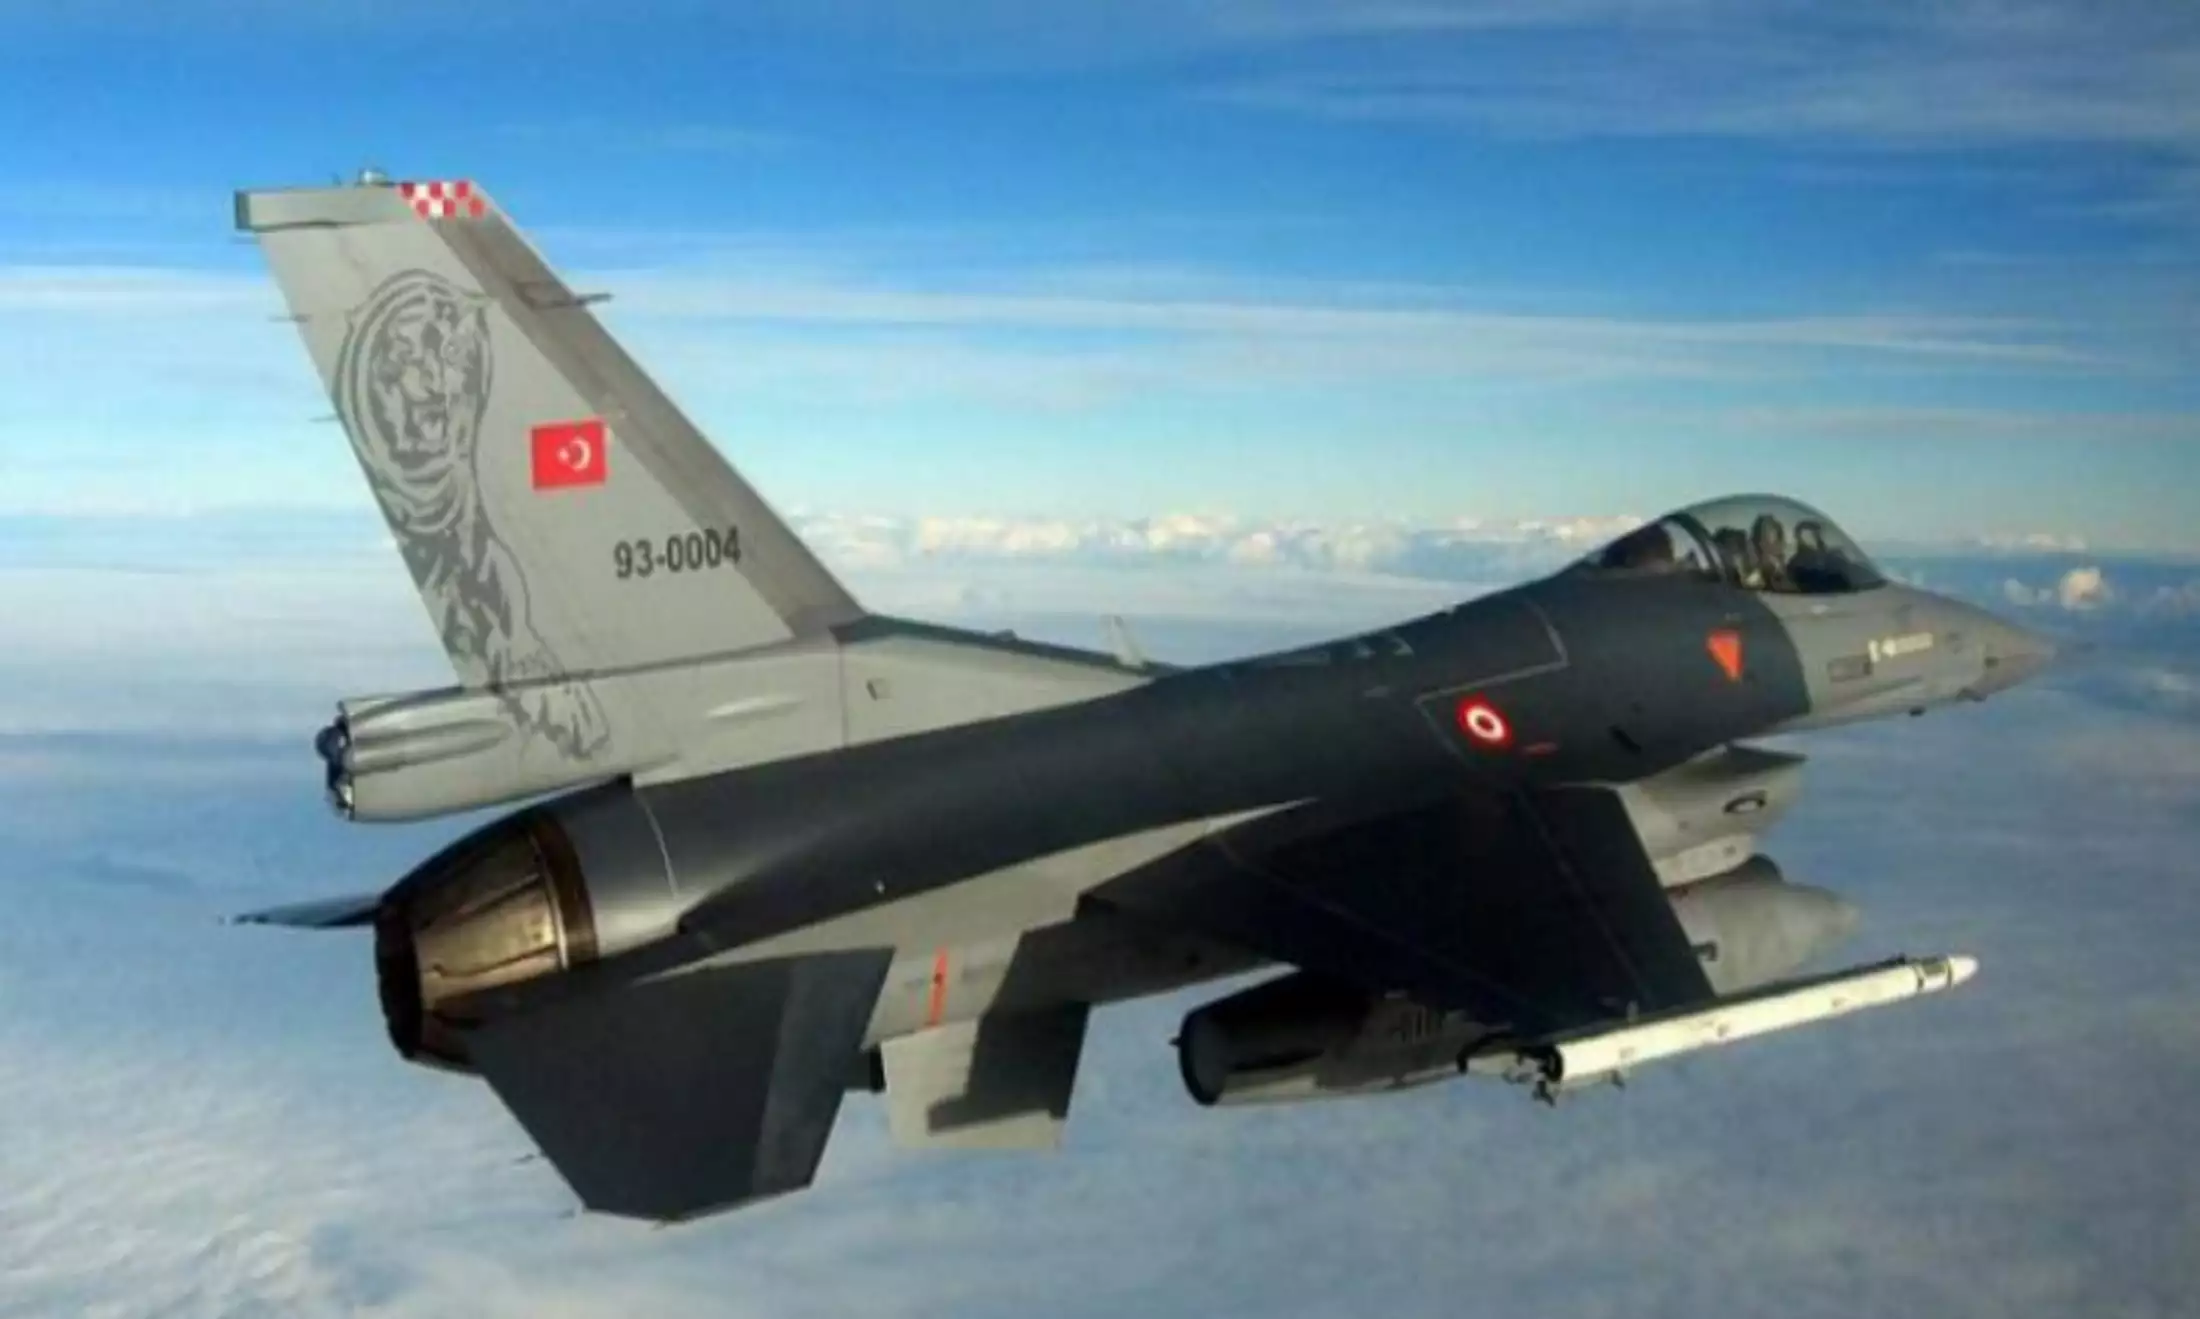 Νέες τουρκικές παραβιάσεις από μαχητικά αεροσκάφη πάνω από το Αιγαίο